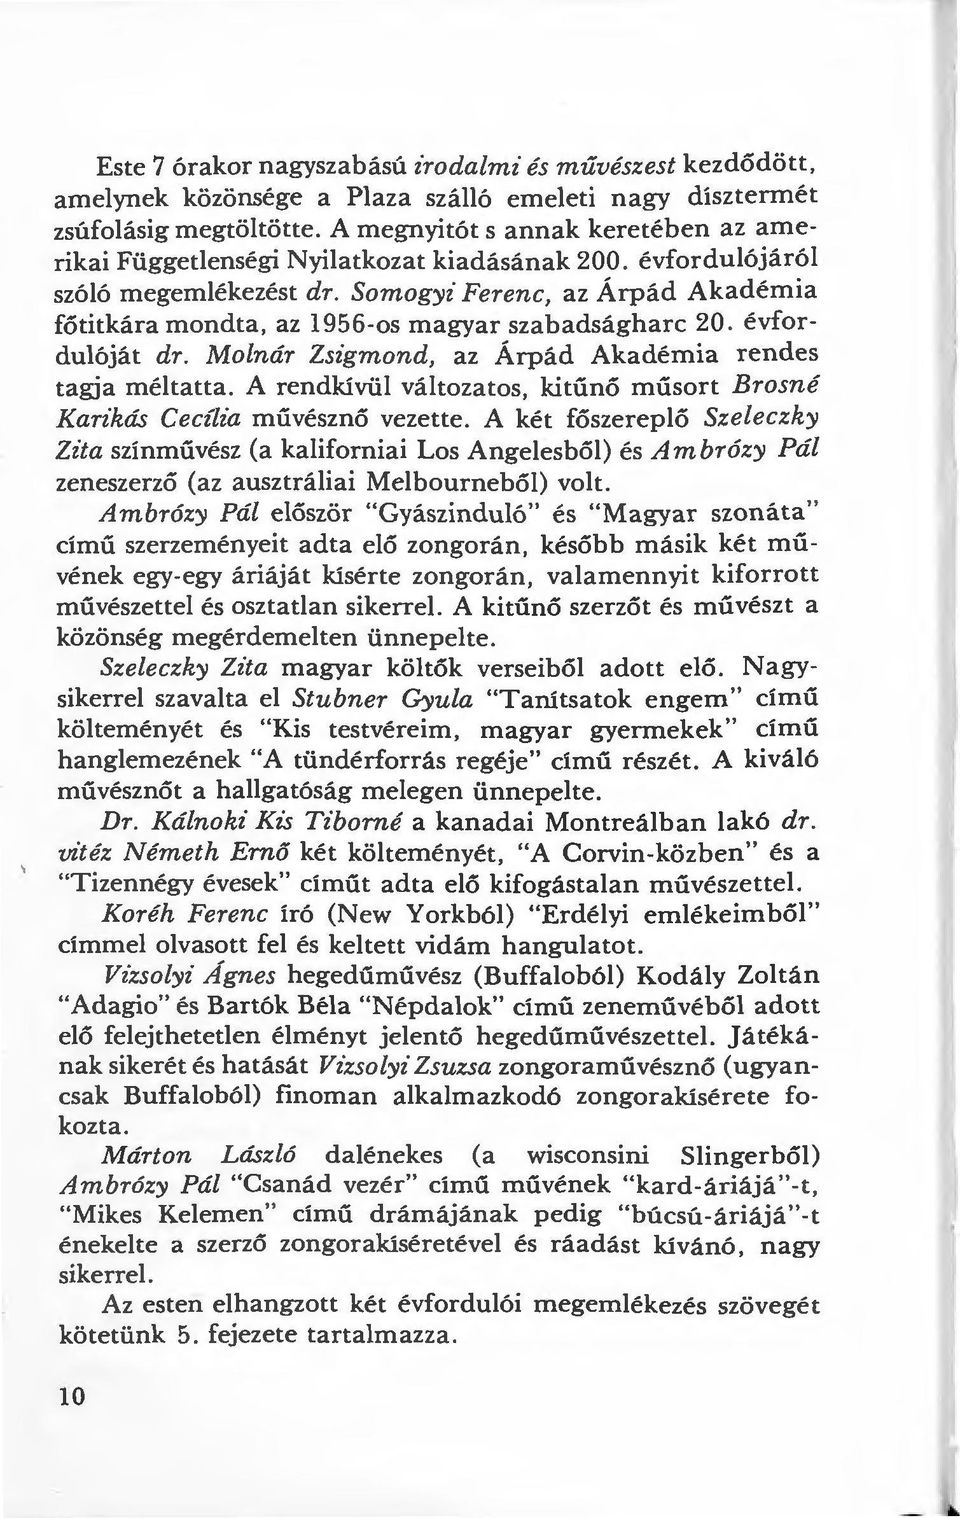 Somogyz Ferenc, az Árpád Akadémia főtitkára mondta, az 1956-os magyar szabadságharc 20. évfordulóját dr. Molnár Zsigmond, az Árpád Akadémia rendes tagja méltatta.